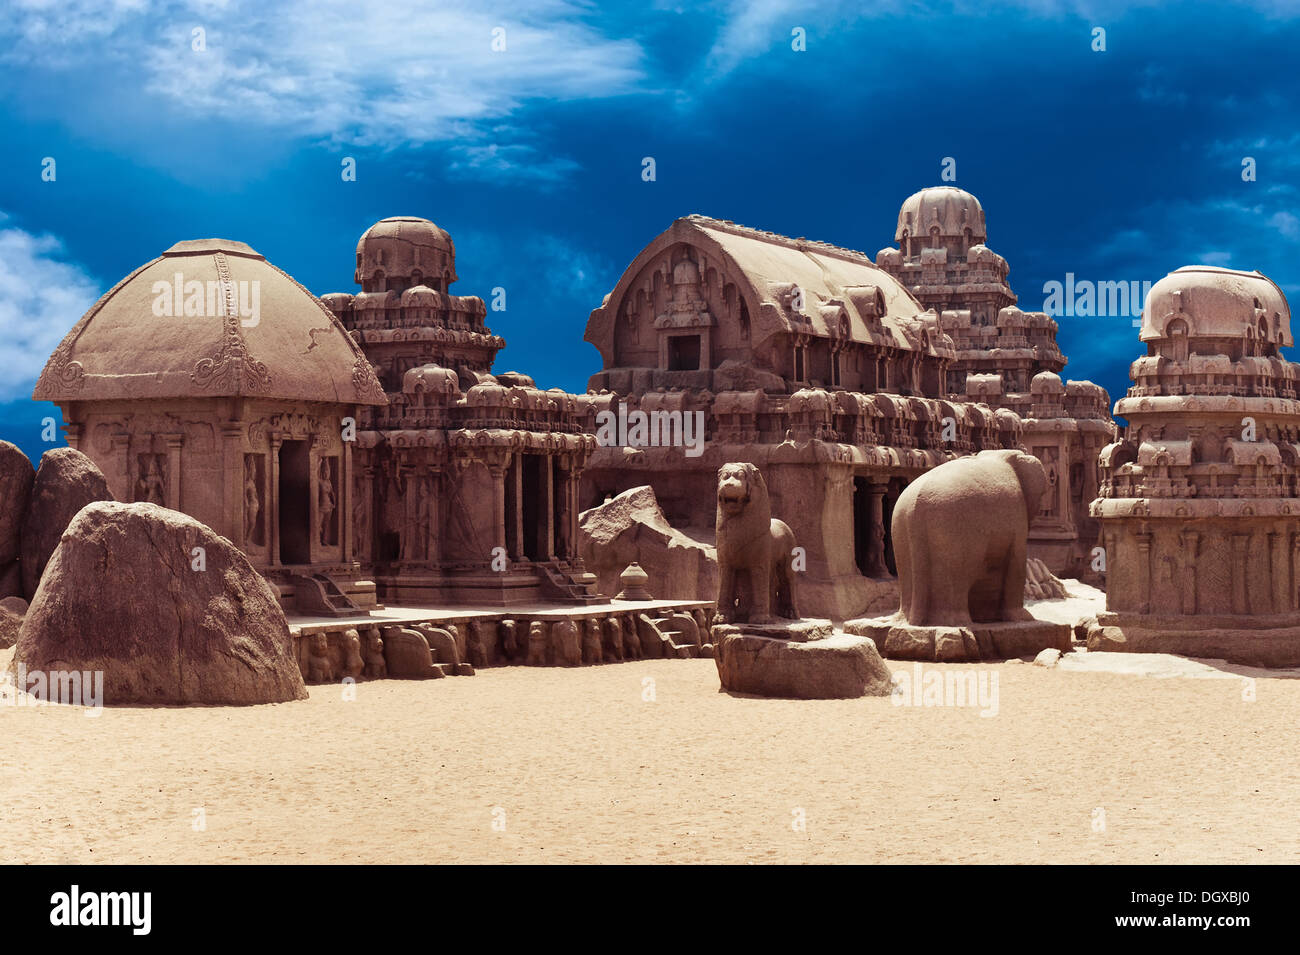 Panch monolitico Rathas tempio indù di Mahabalipuram Grande Sud architettura indiana UNESCO World Heritage Site India del Sud Foto Stock